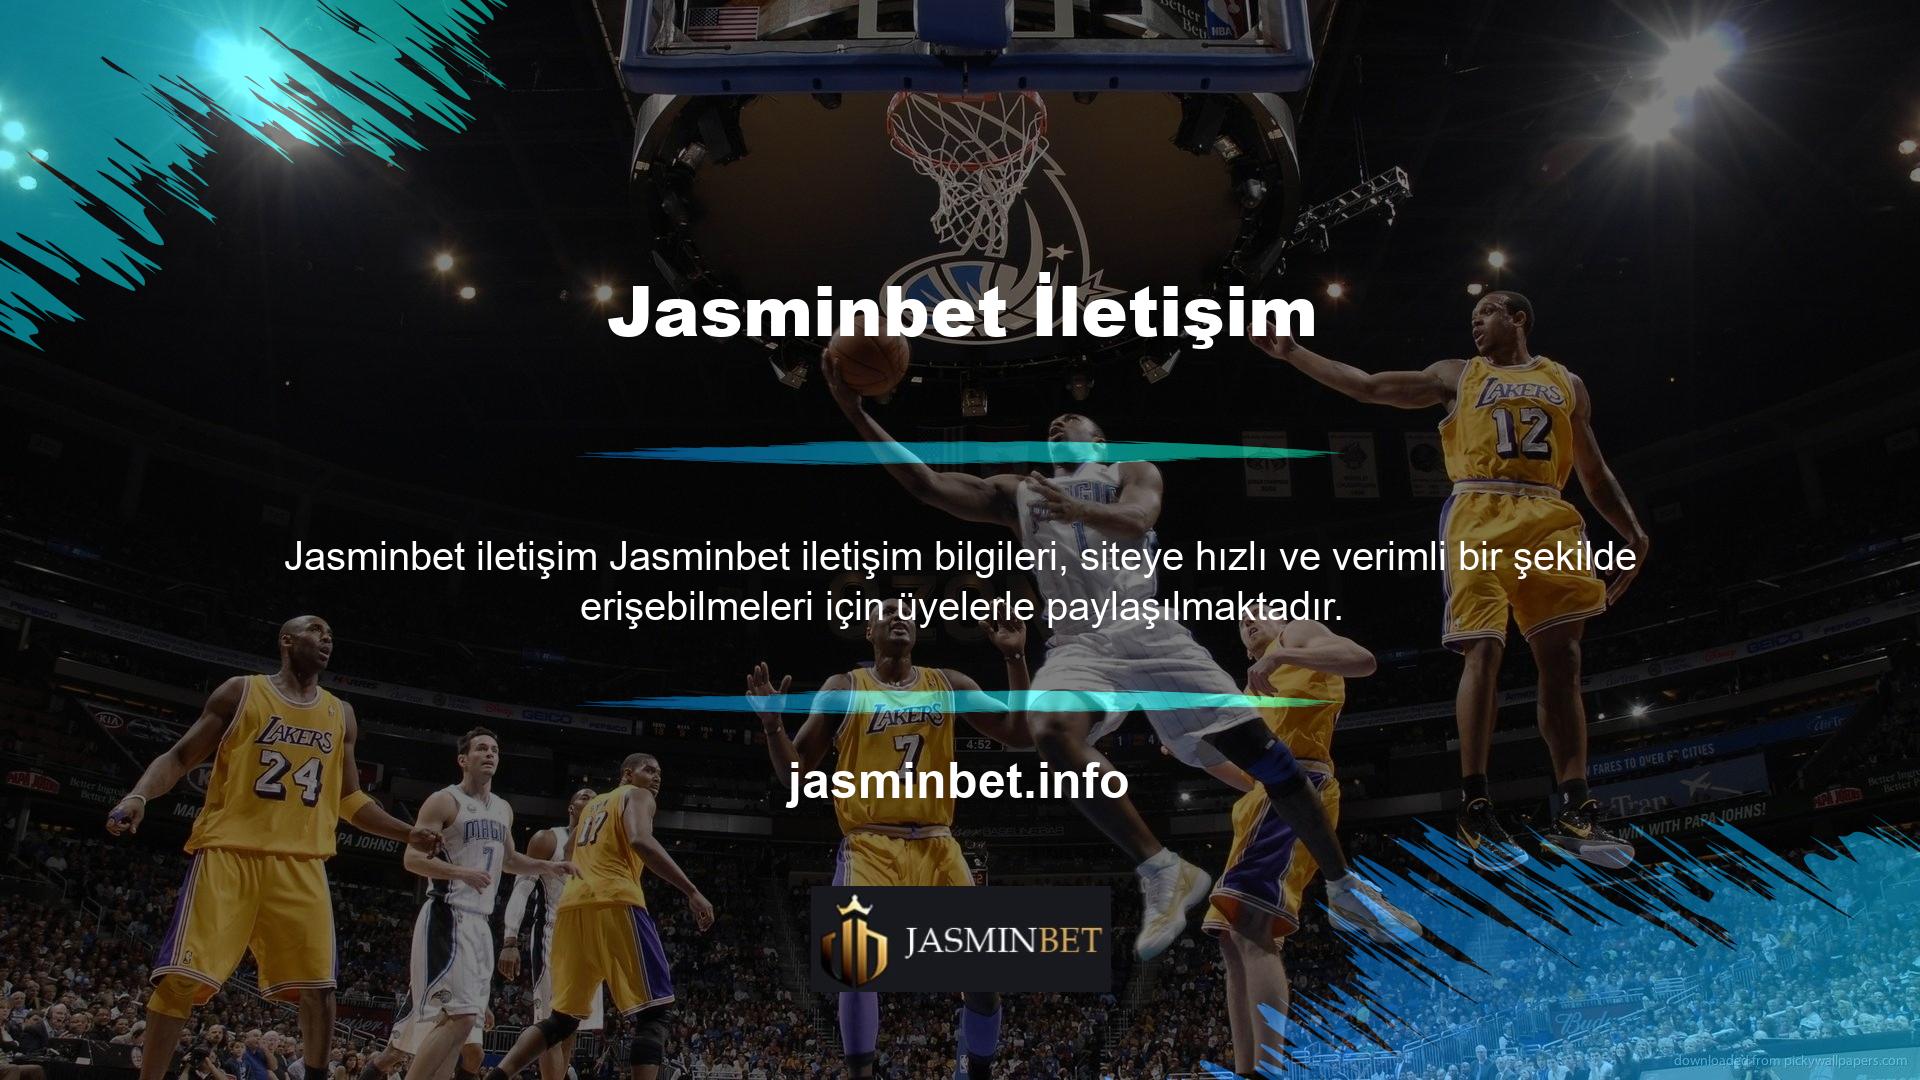 Sorunsuz canlı bahis sitesi Jasminbet, bir canlı destek uygulaması aracılığıyla çevrimiçi müşteri desteği sağlayabilir